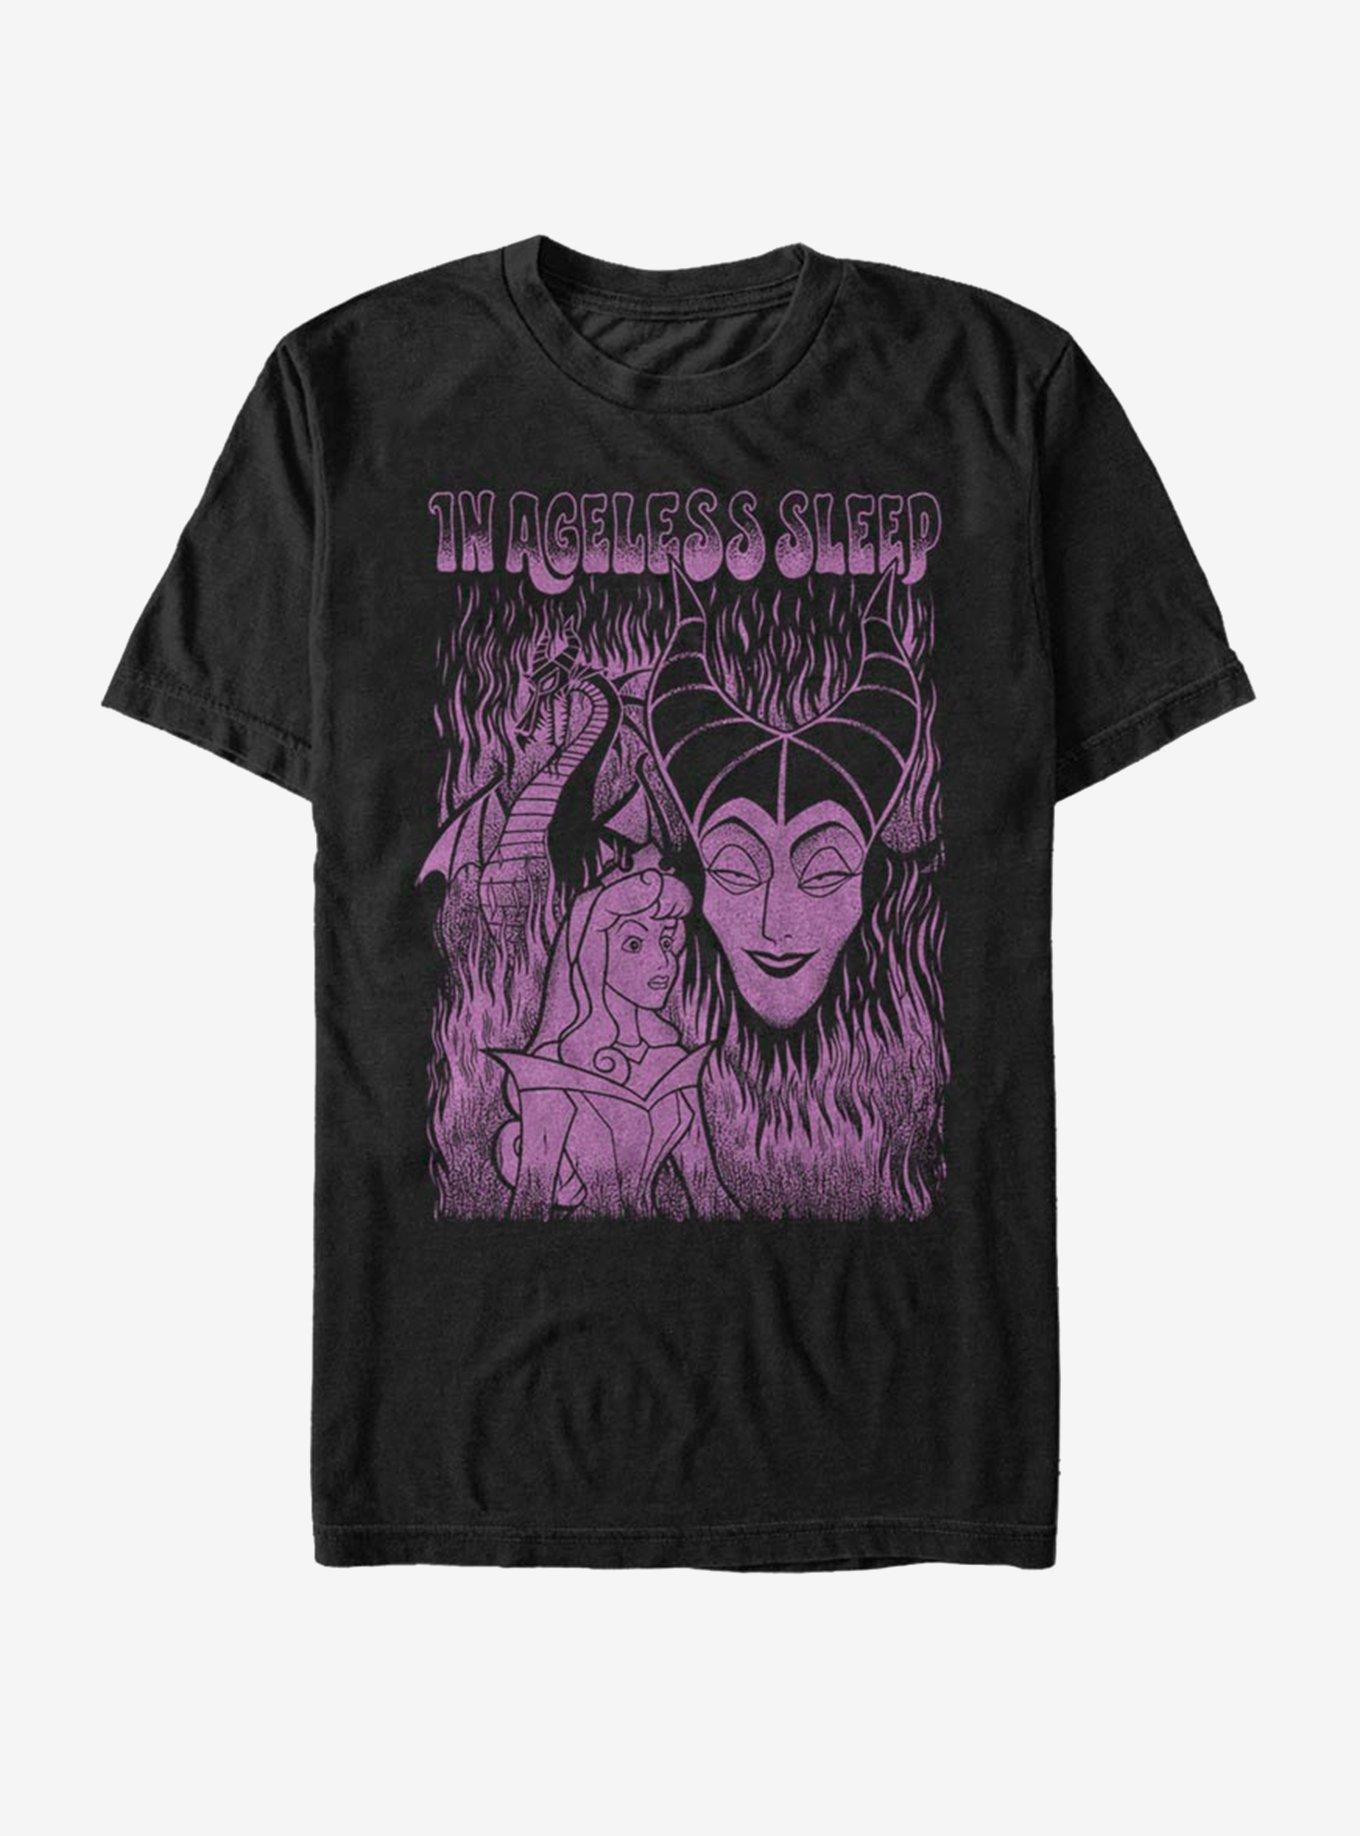 Disney Villains Maleficent Ageless Sleep T-Shirt